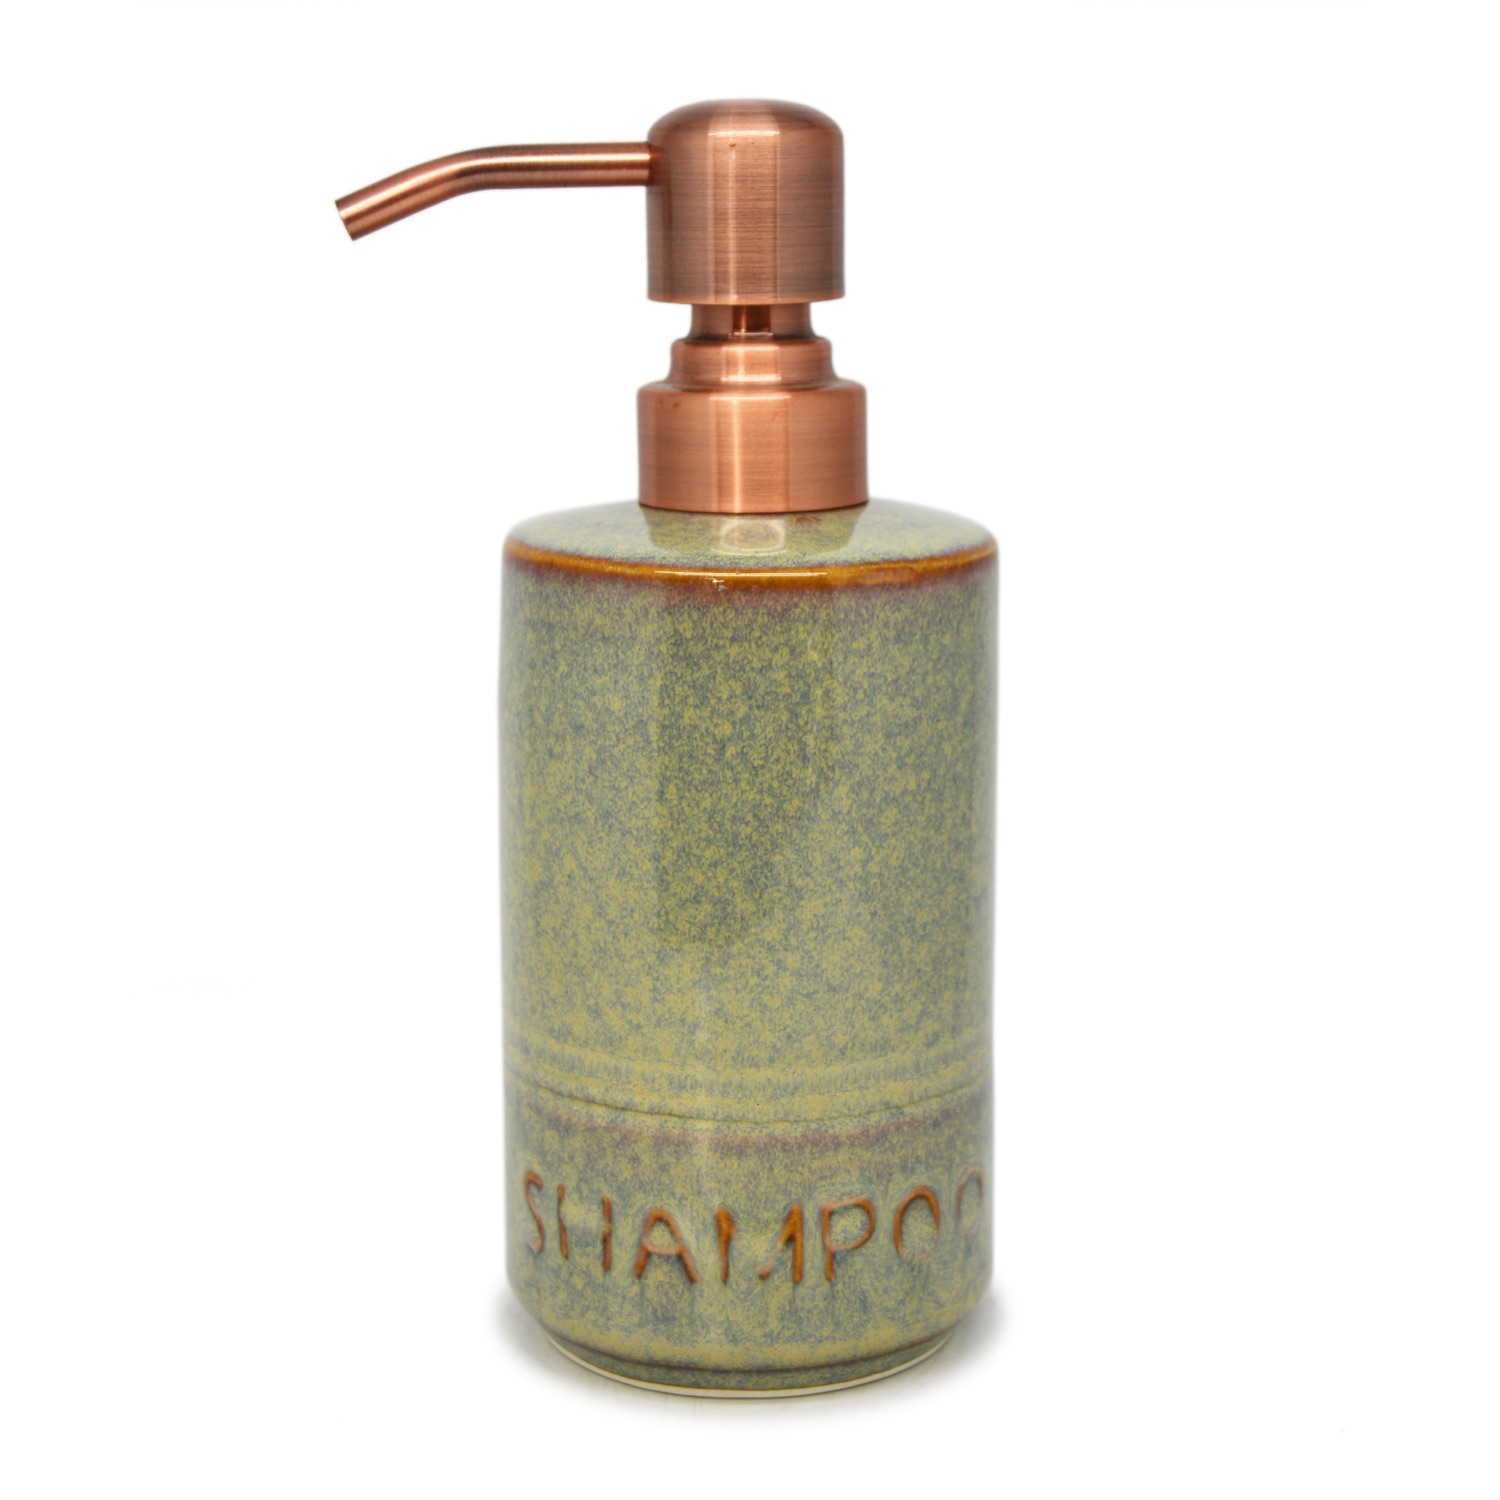 Pillar Liquid Dispenser - Shampoo - Brass-Plated Pump